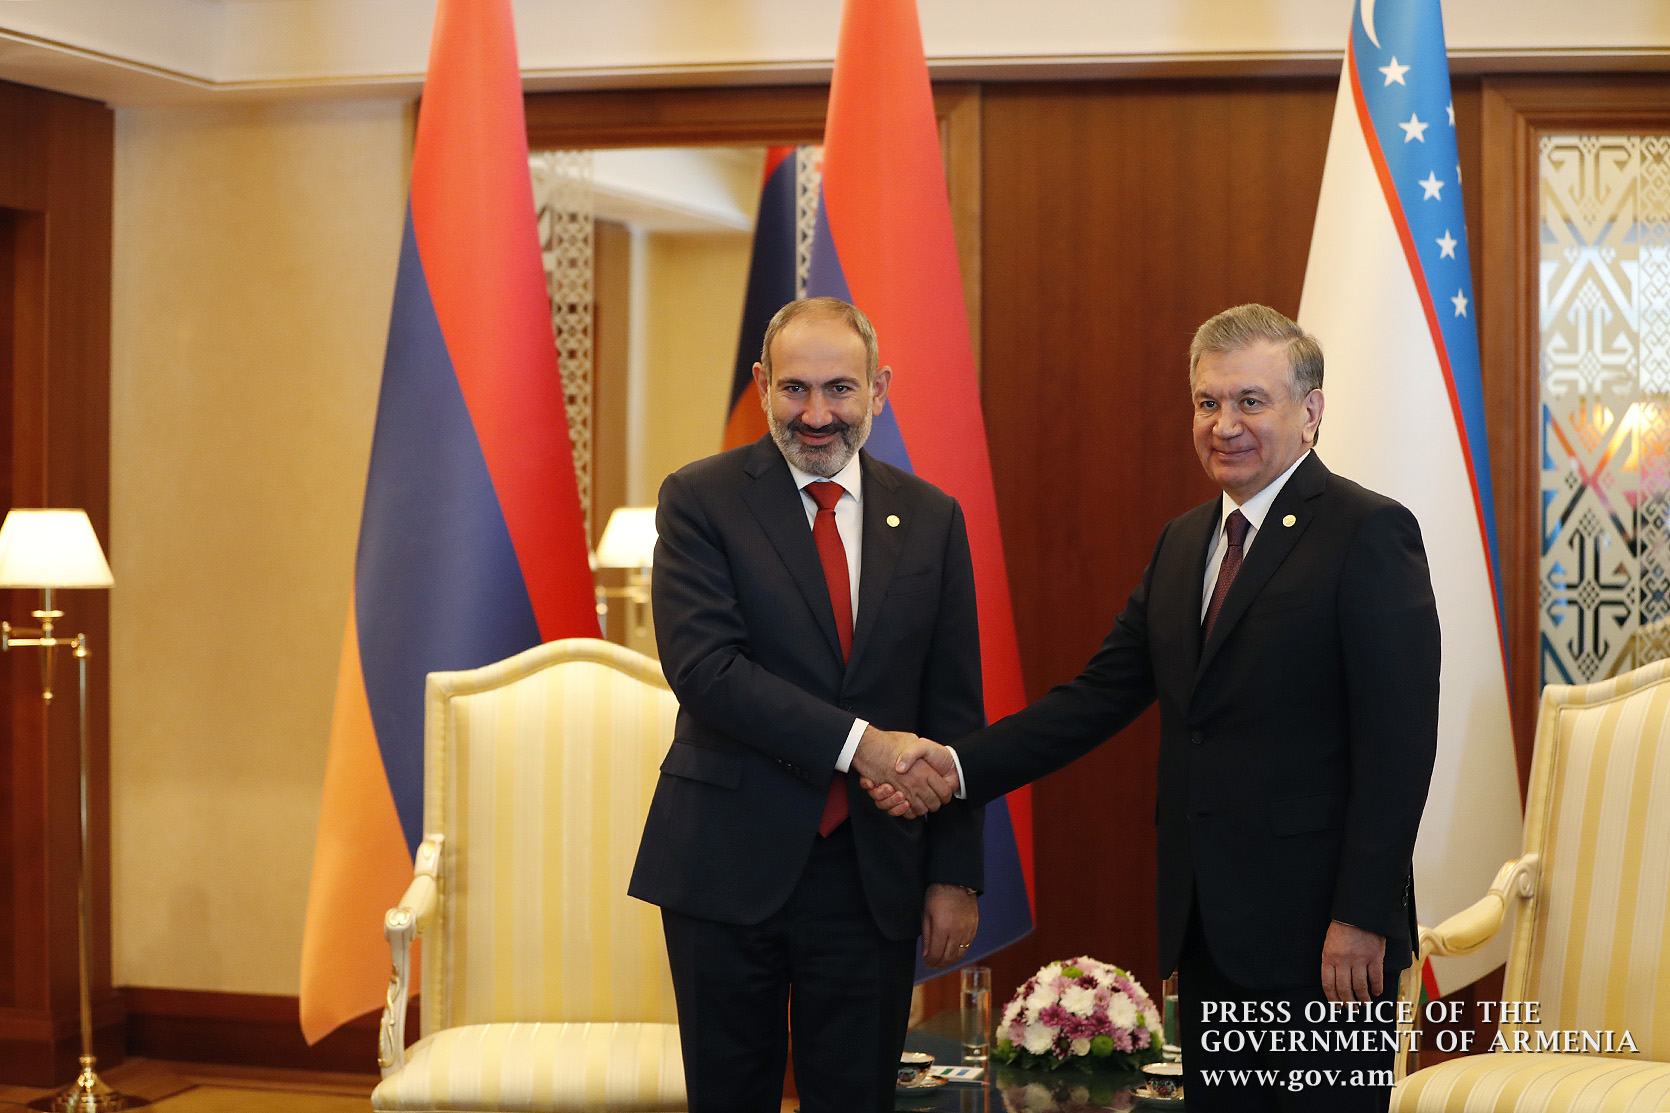 Փաշինյանը հույս ունի, որ ՀՀ և Ուզբեկստանի փոխհարաբերությունները կշարունակեն զարգանալ